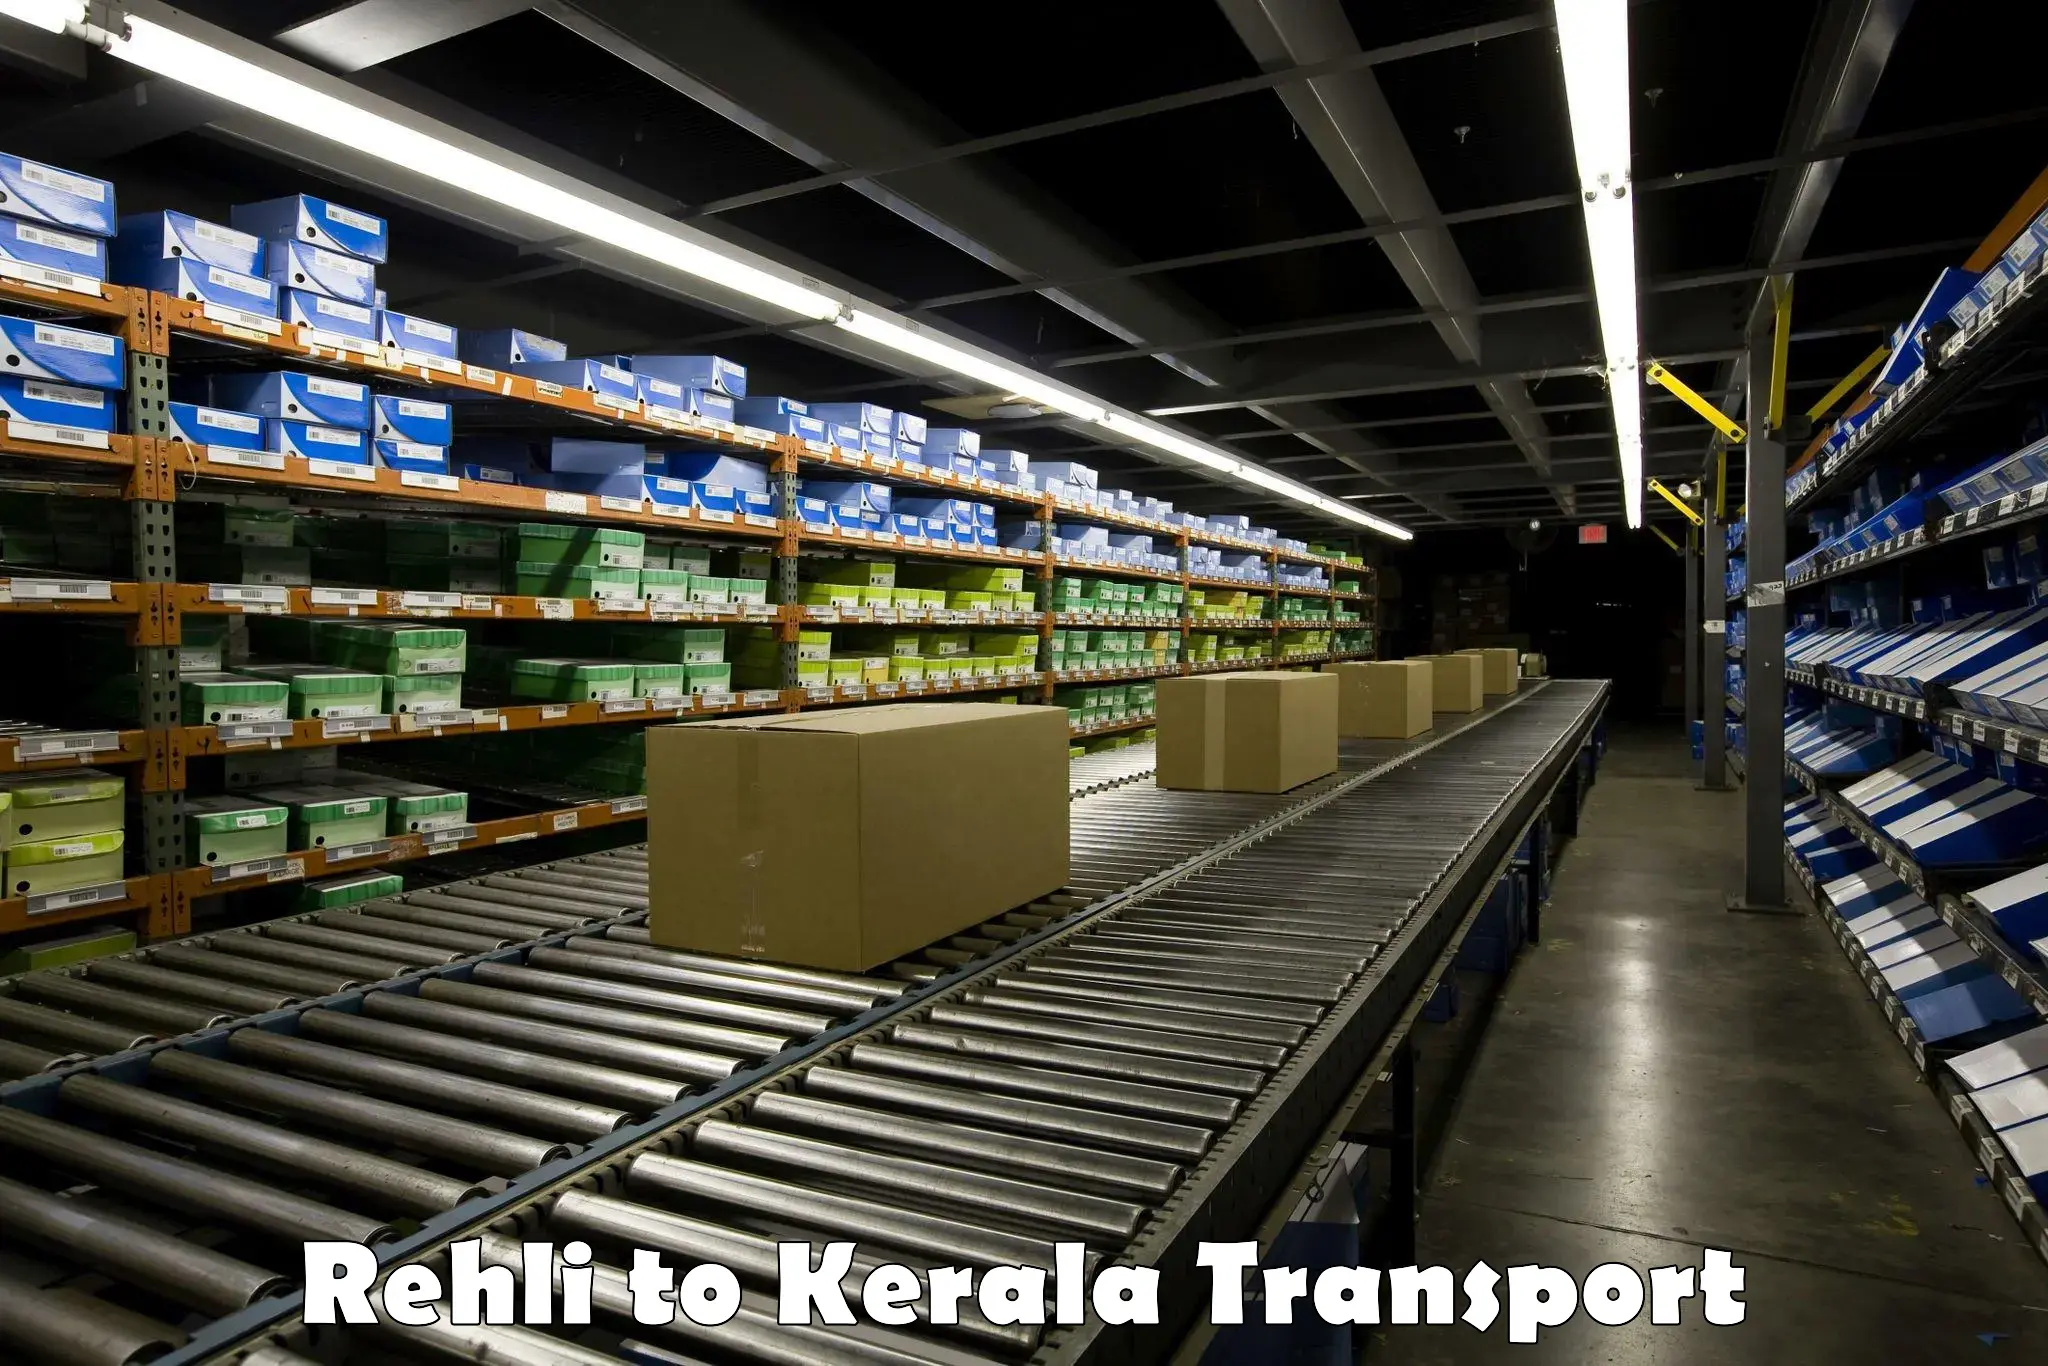 Nearest transport service Rehli to Kerala